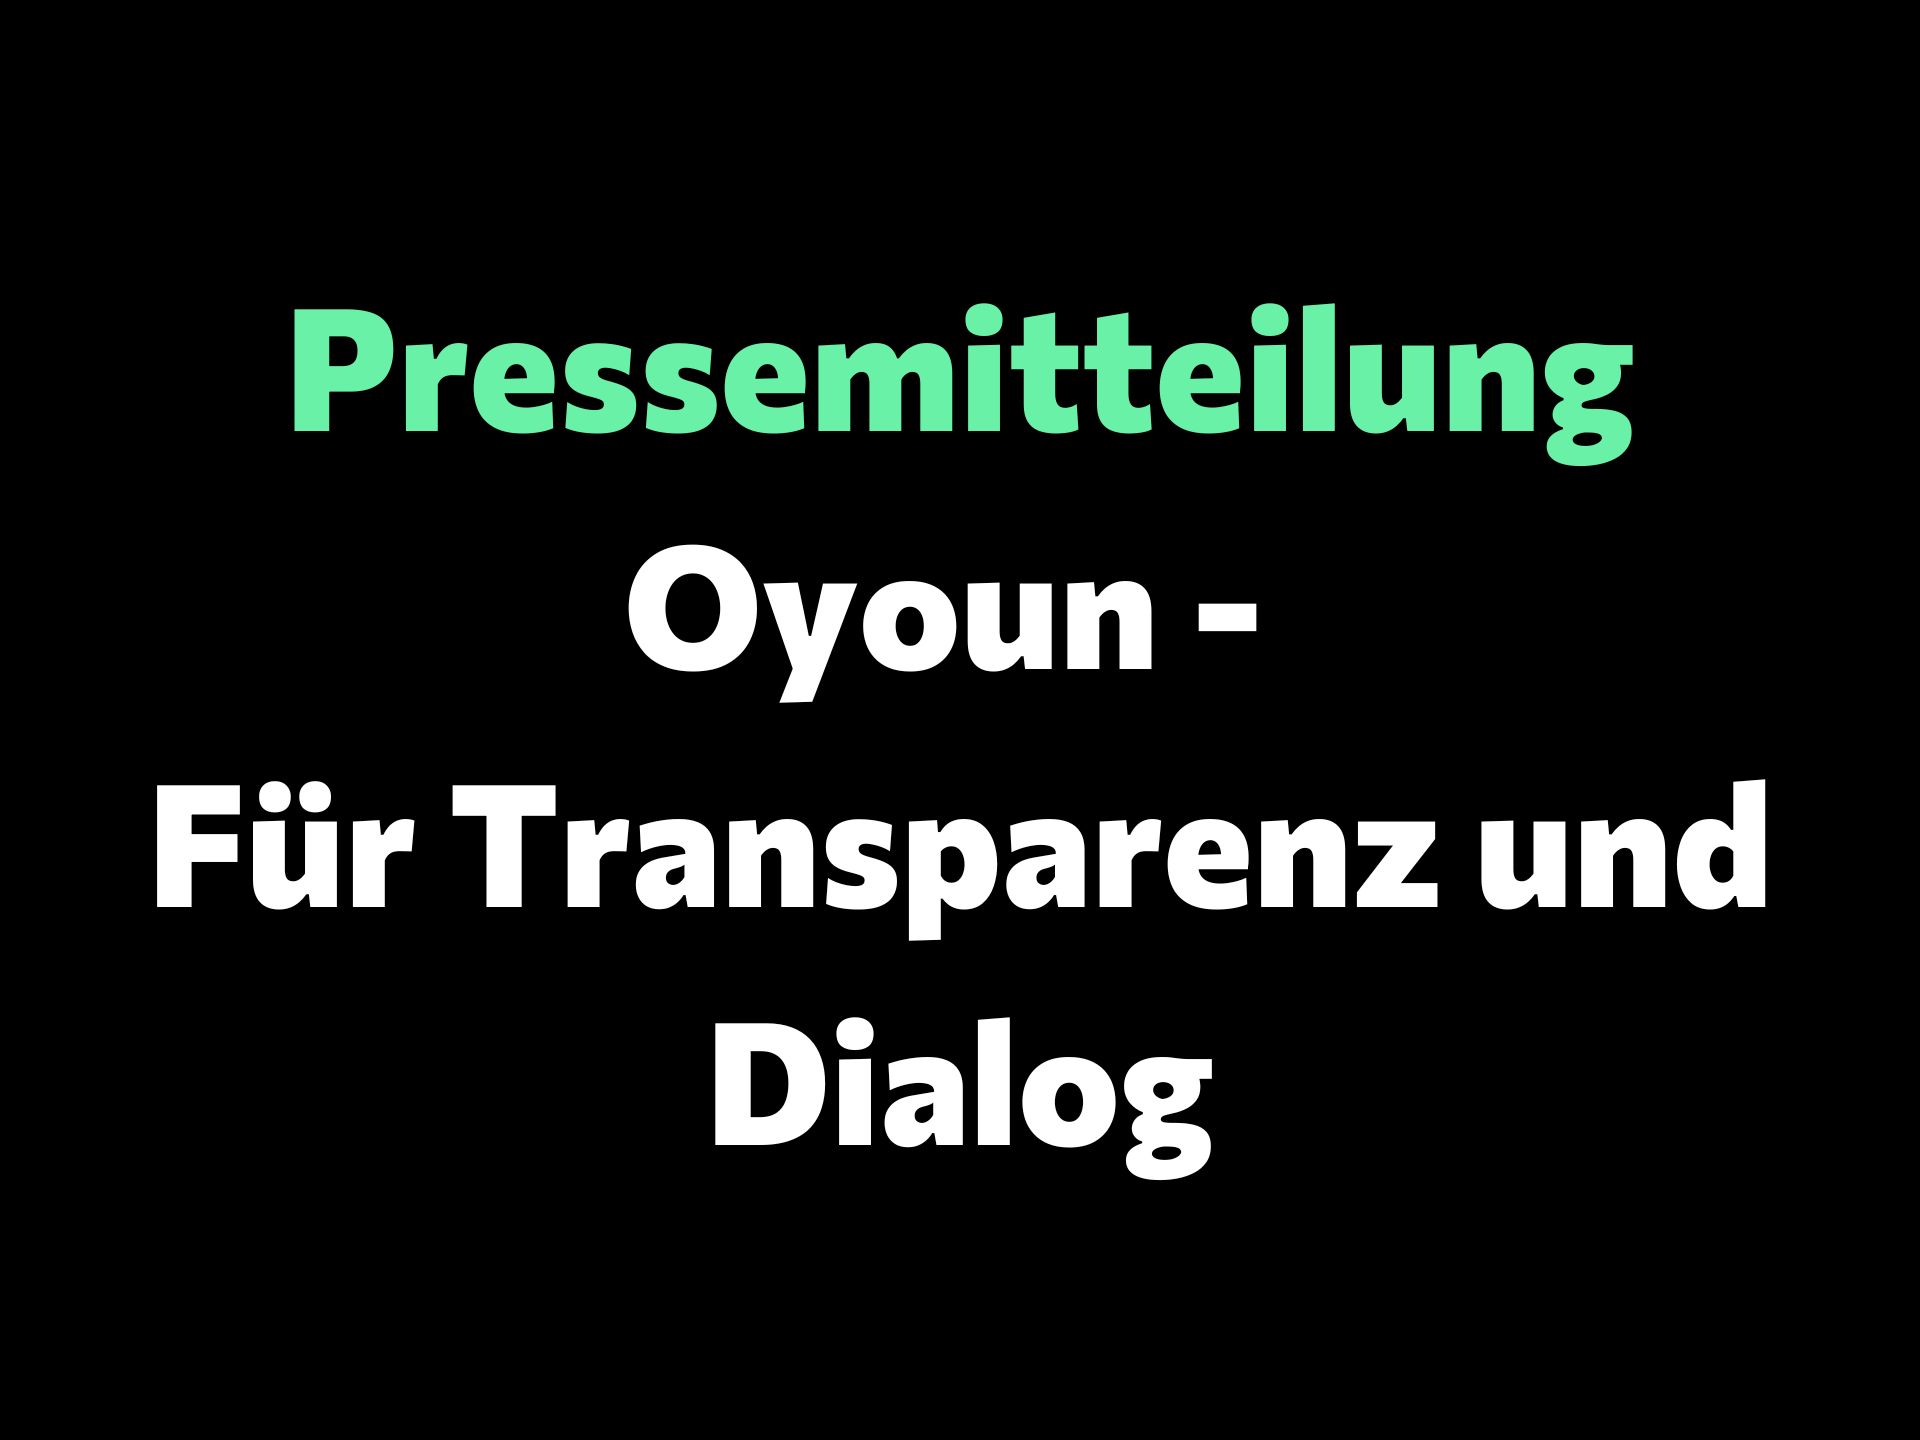 Oyoun – Für Transparenz und Dialog